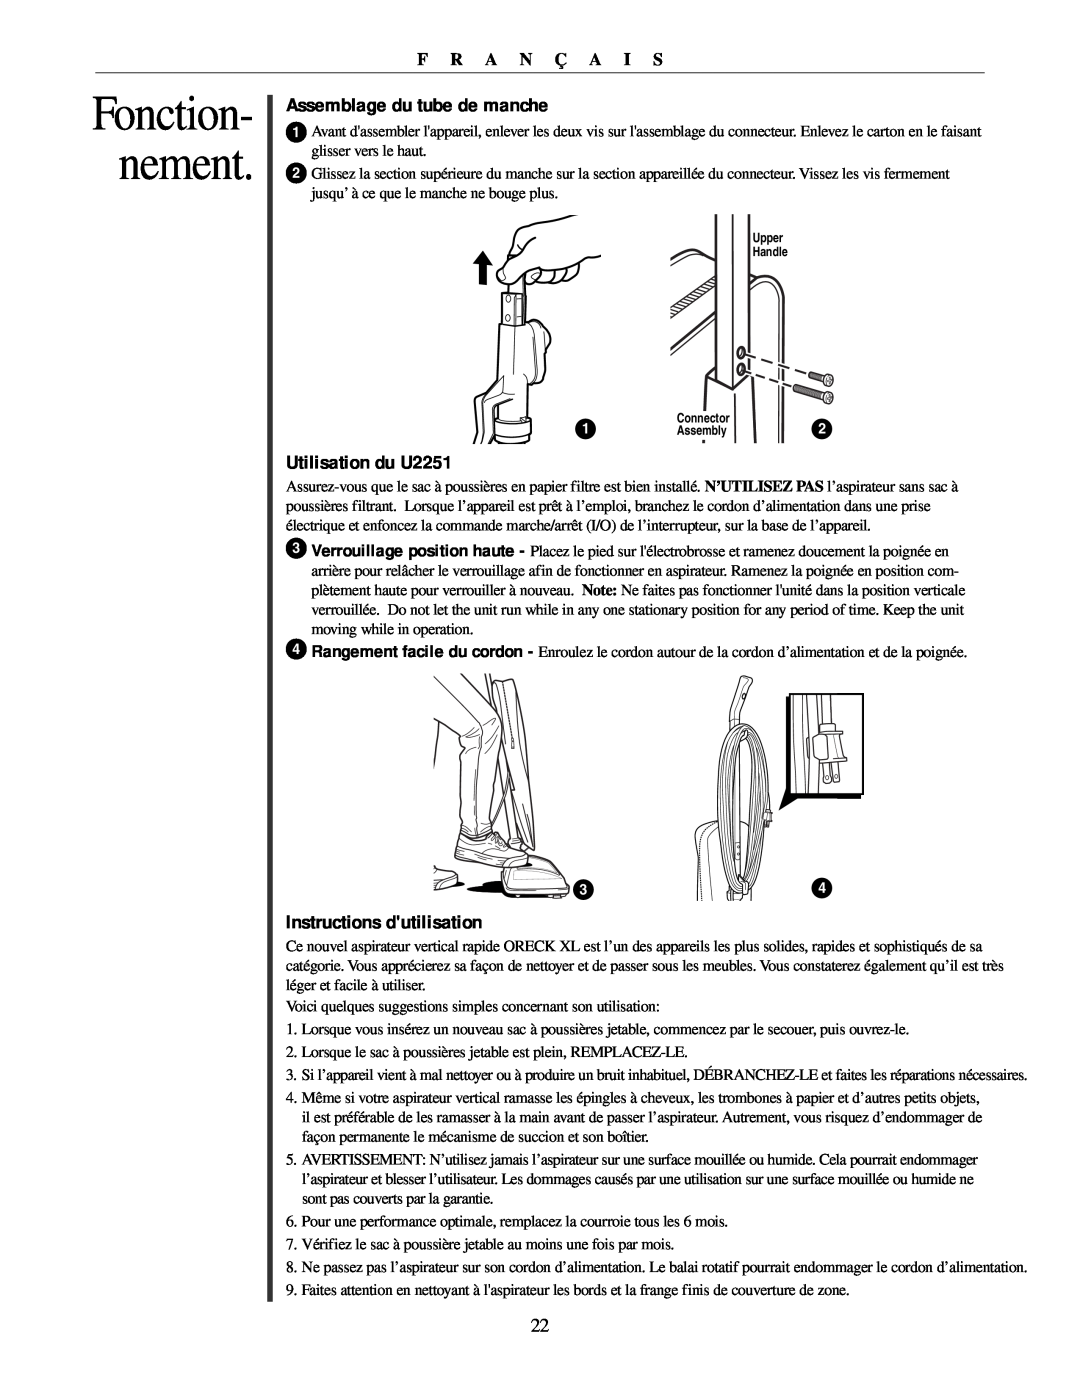 Oreck Assemblage du tube de manche, Utilisation du U2251, Instructions dutilisation, Fonction- nement, F R A N Ç A I S 